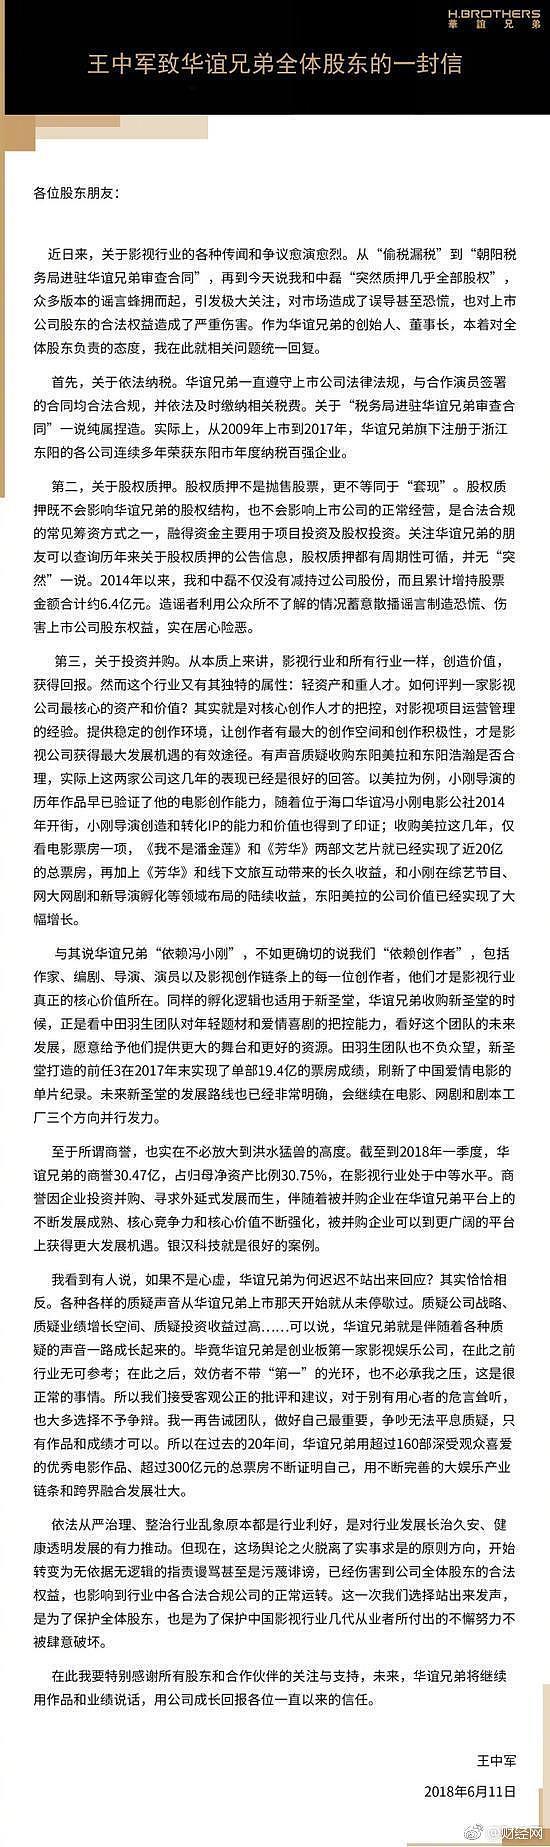 华谊兄弟发文:税务局进驻审查合同一说纯属捏造